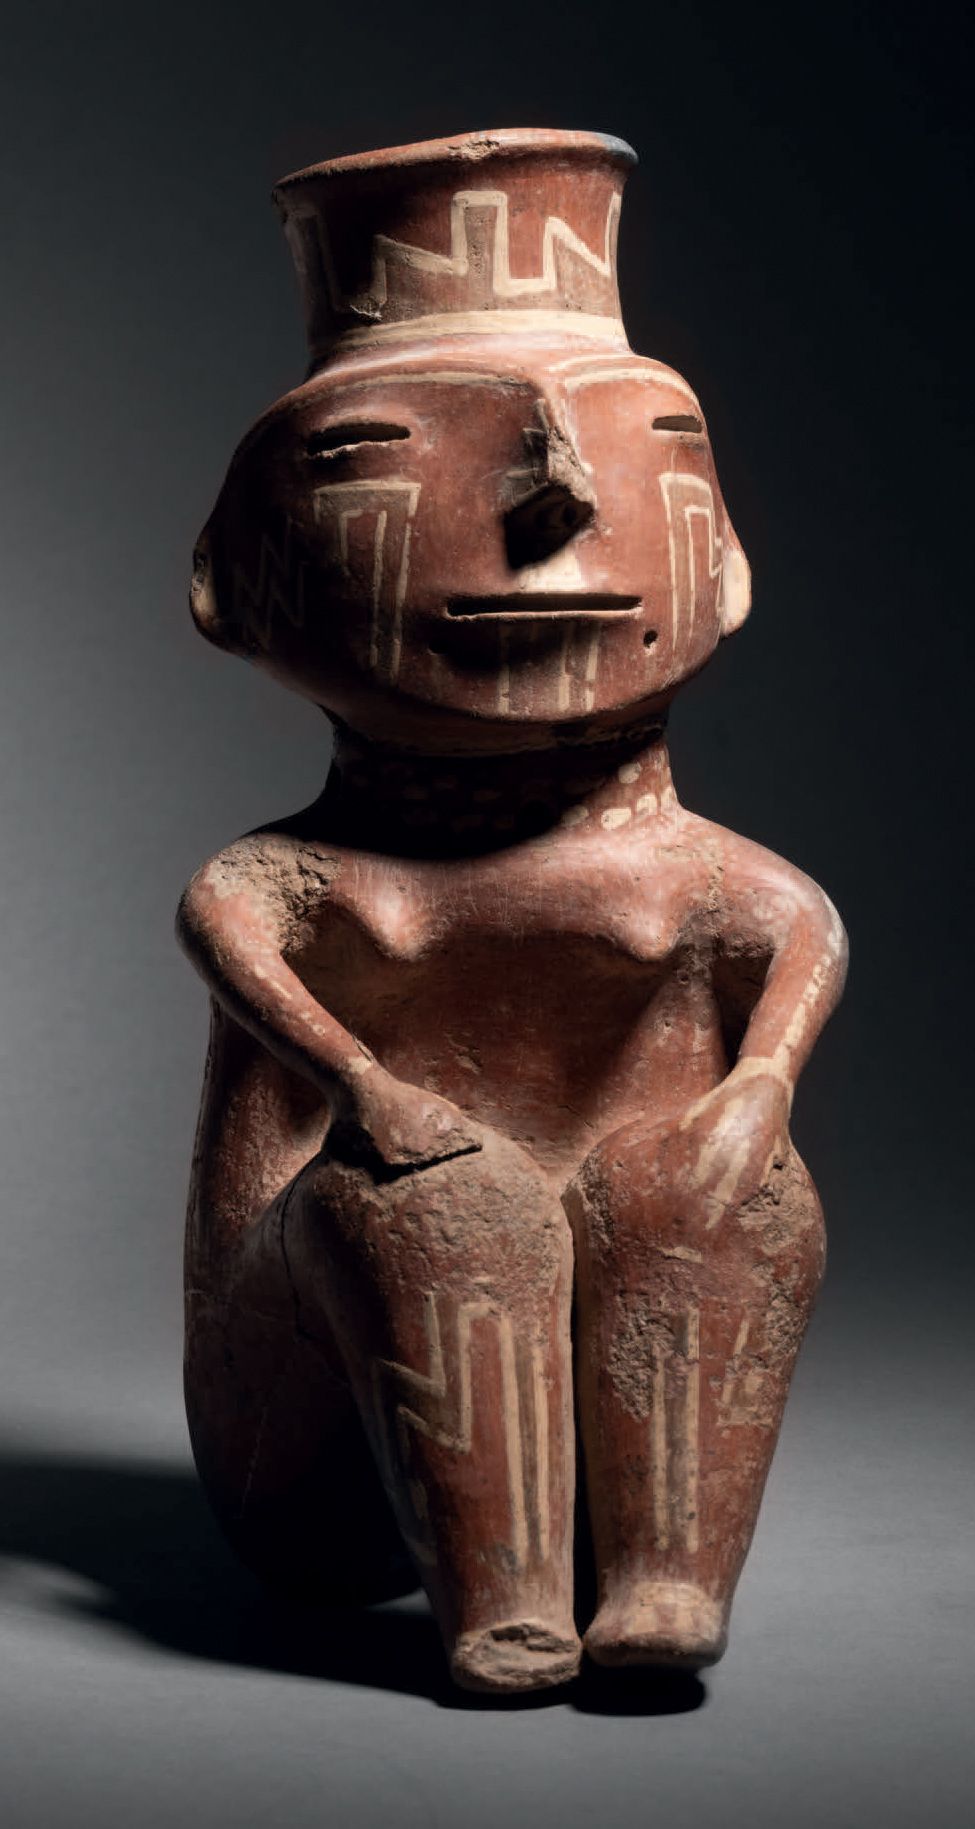 Null Figura sentada, cultura Condorhuasi, Argentina 500 a.C.-500 d.C.
Cerámica h&hellip;